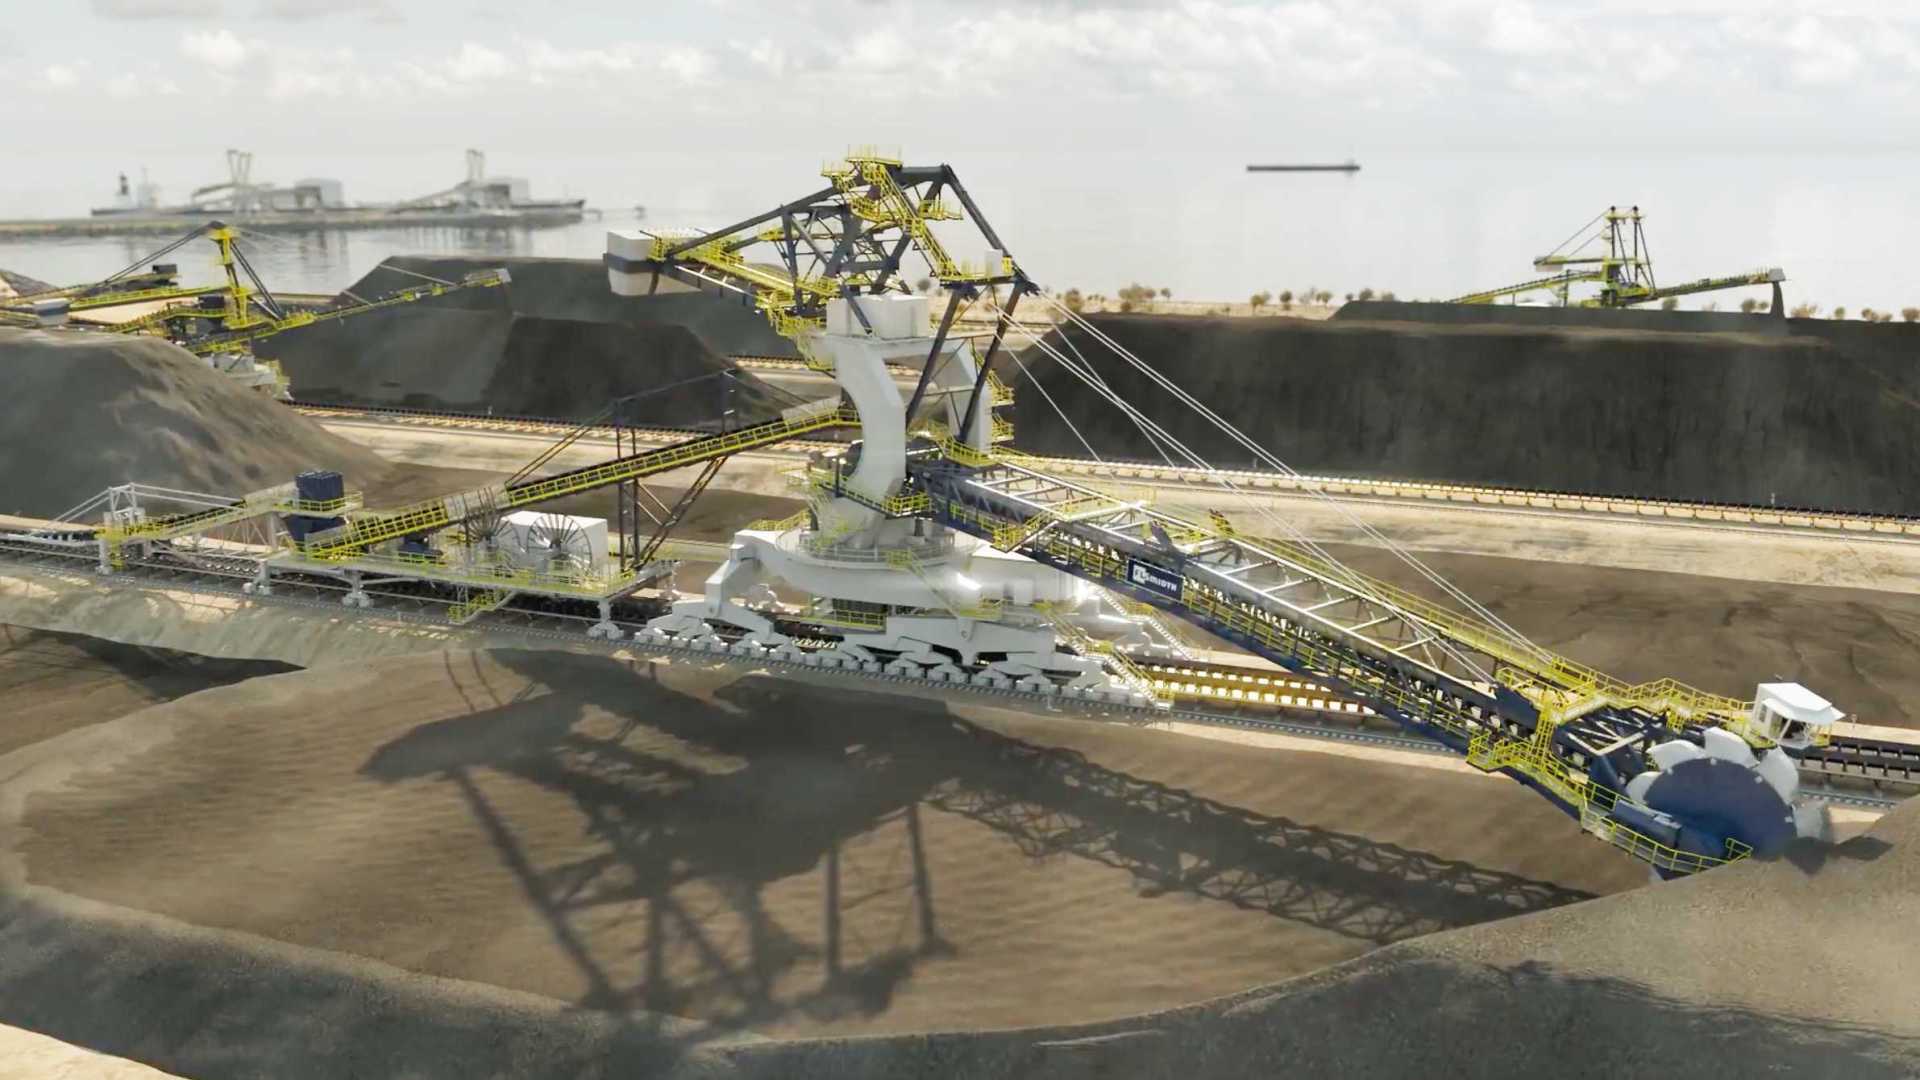 大型重工采矿运输工业生产线机械机床设备演示工艺流程模拟3D三维动画视频宣传片制作